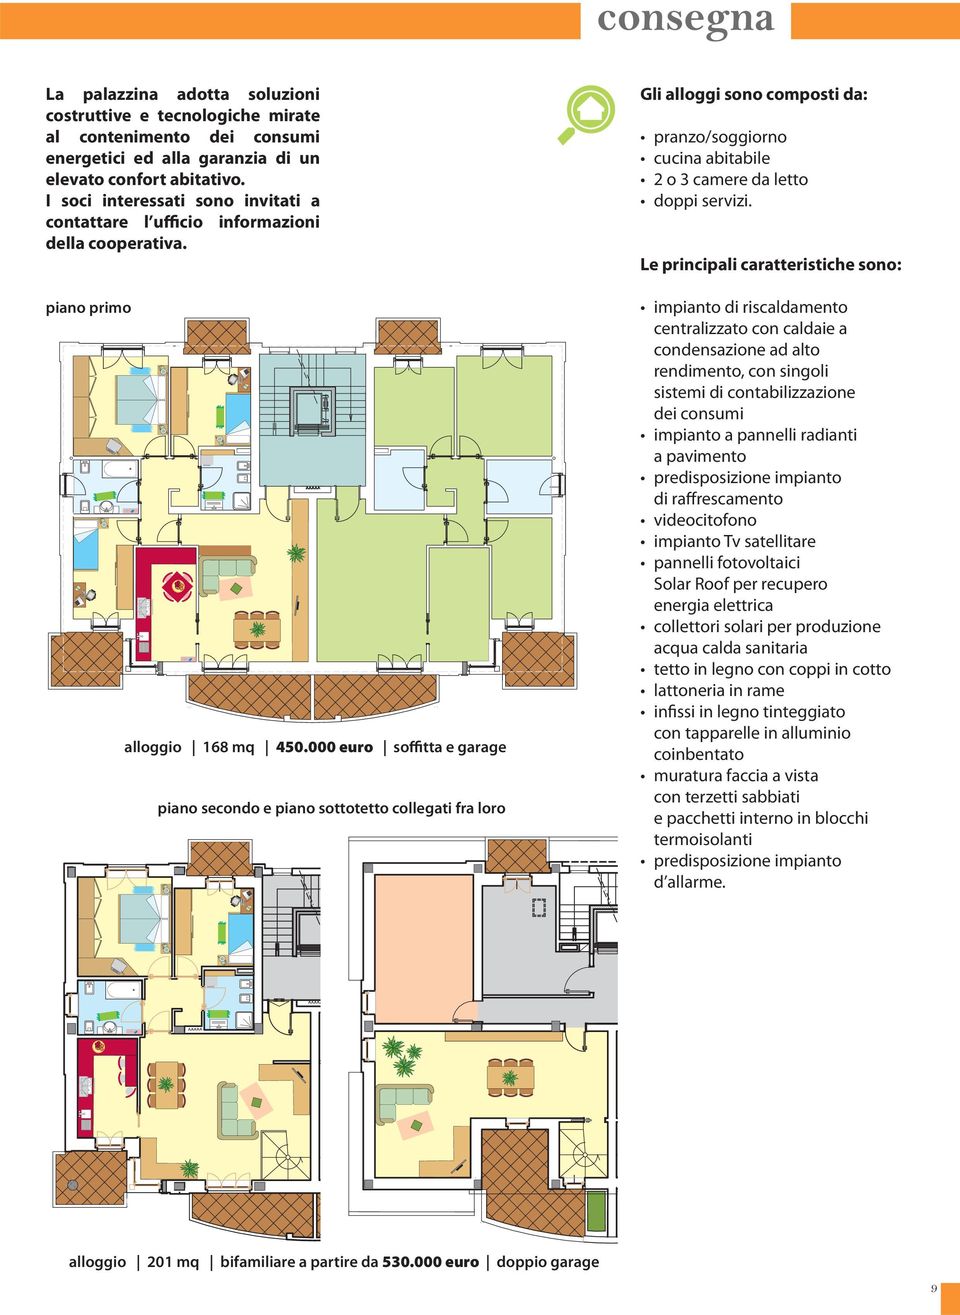 000 euro soffitta e garage piano secondo e piano sottotetto collegati fra loro Gli alloggi sono composti da: pranzo/soggiorno cucina abitabile 2 o 3 camere da letto doppi servizi.